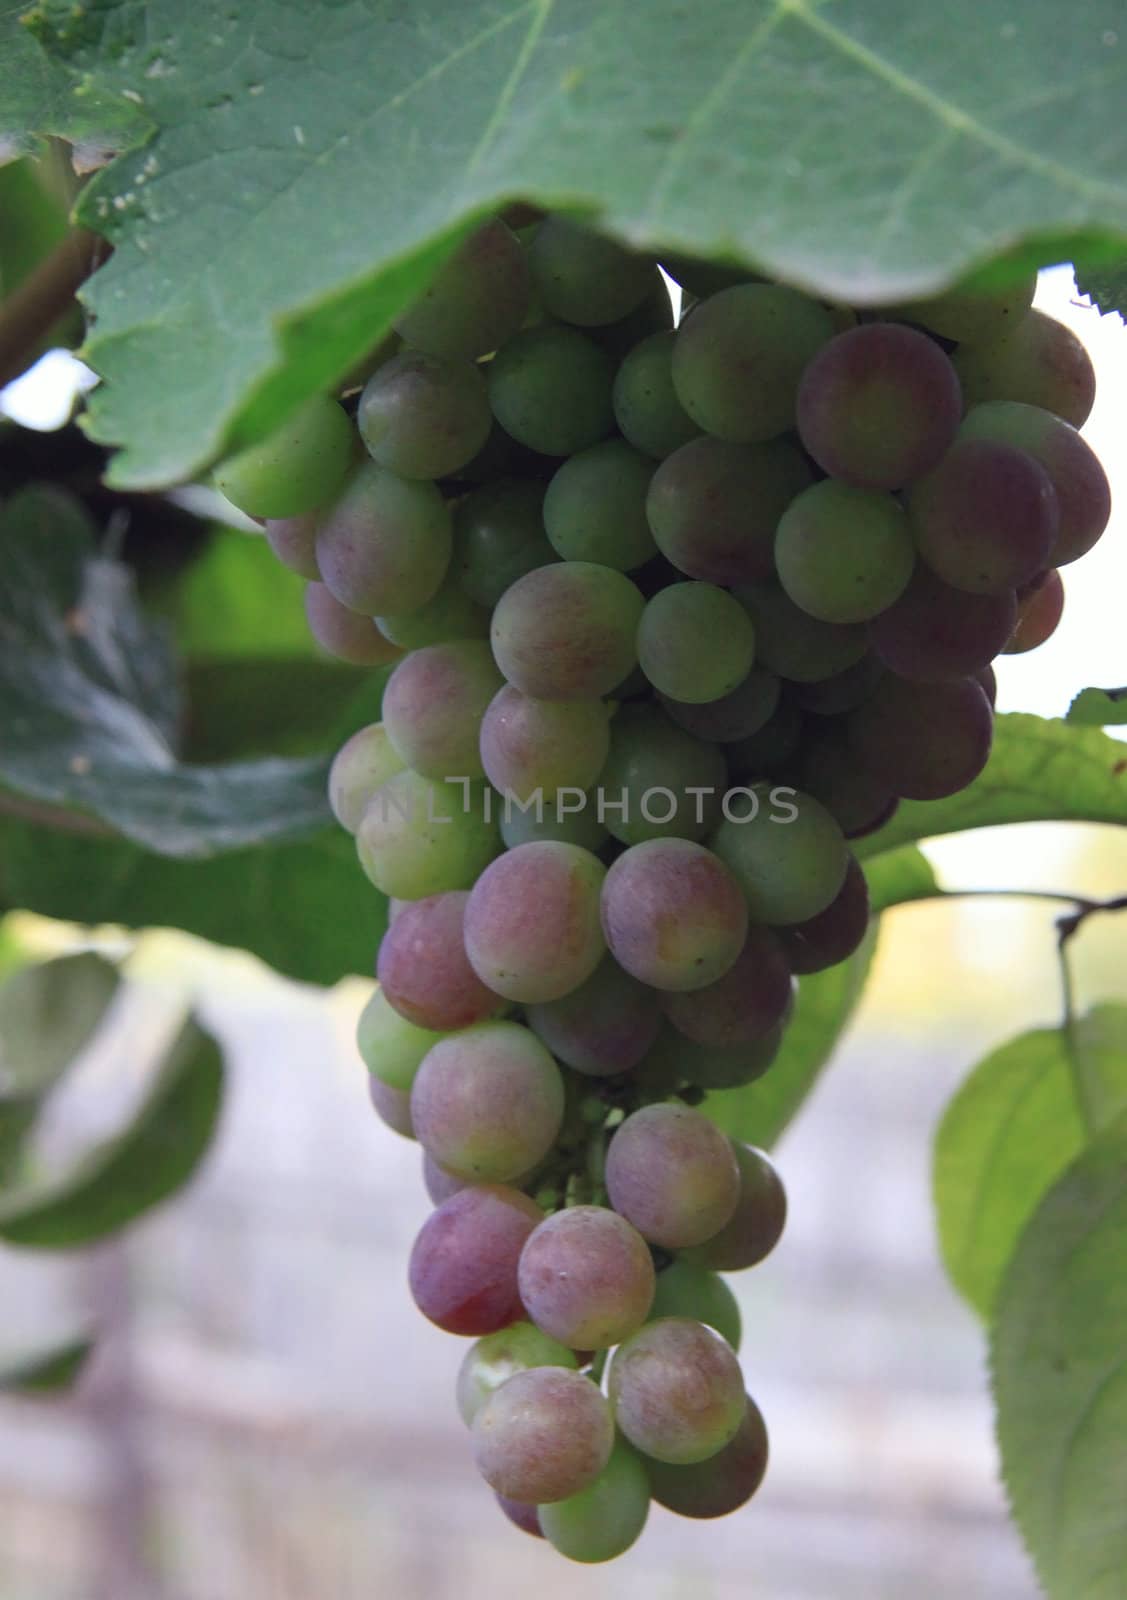 Ripe grapes on the vine in the garden, filmed in September 2011.